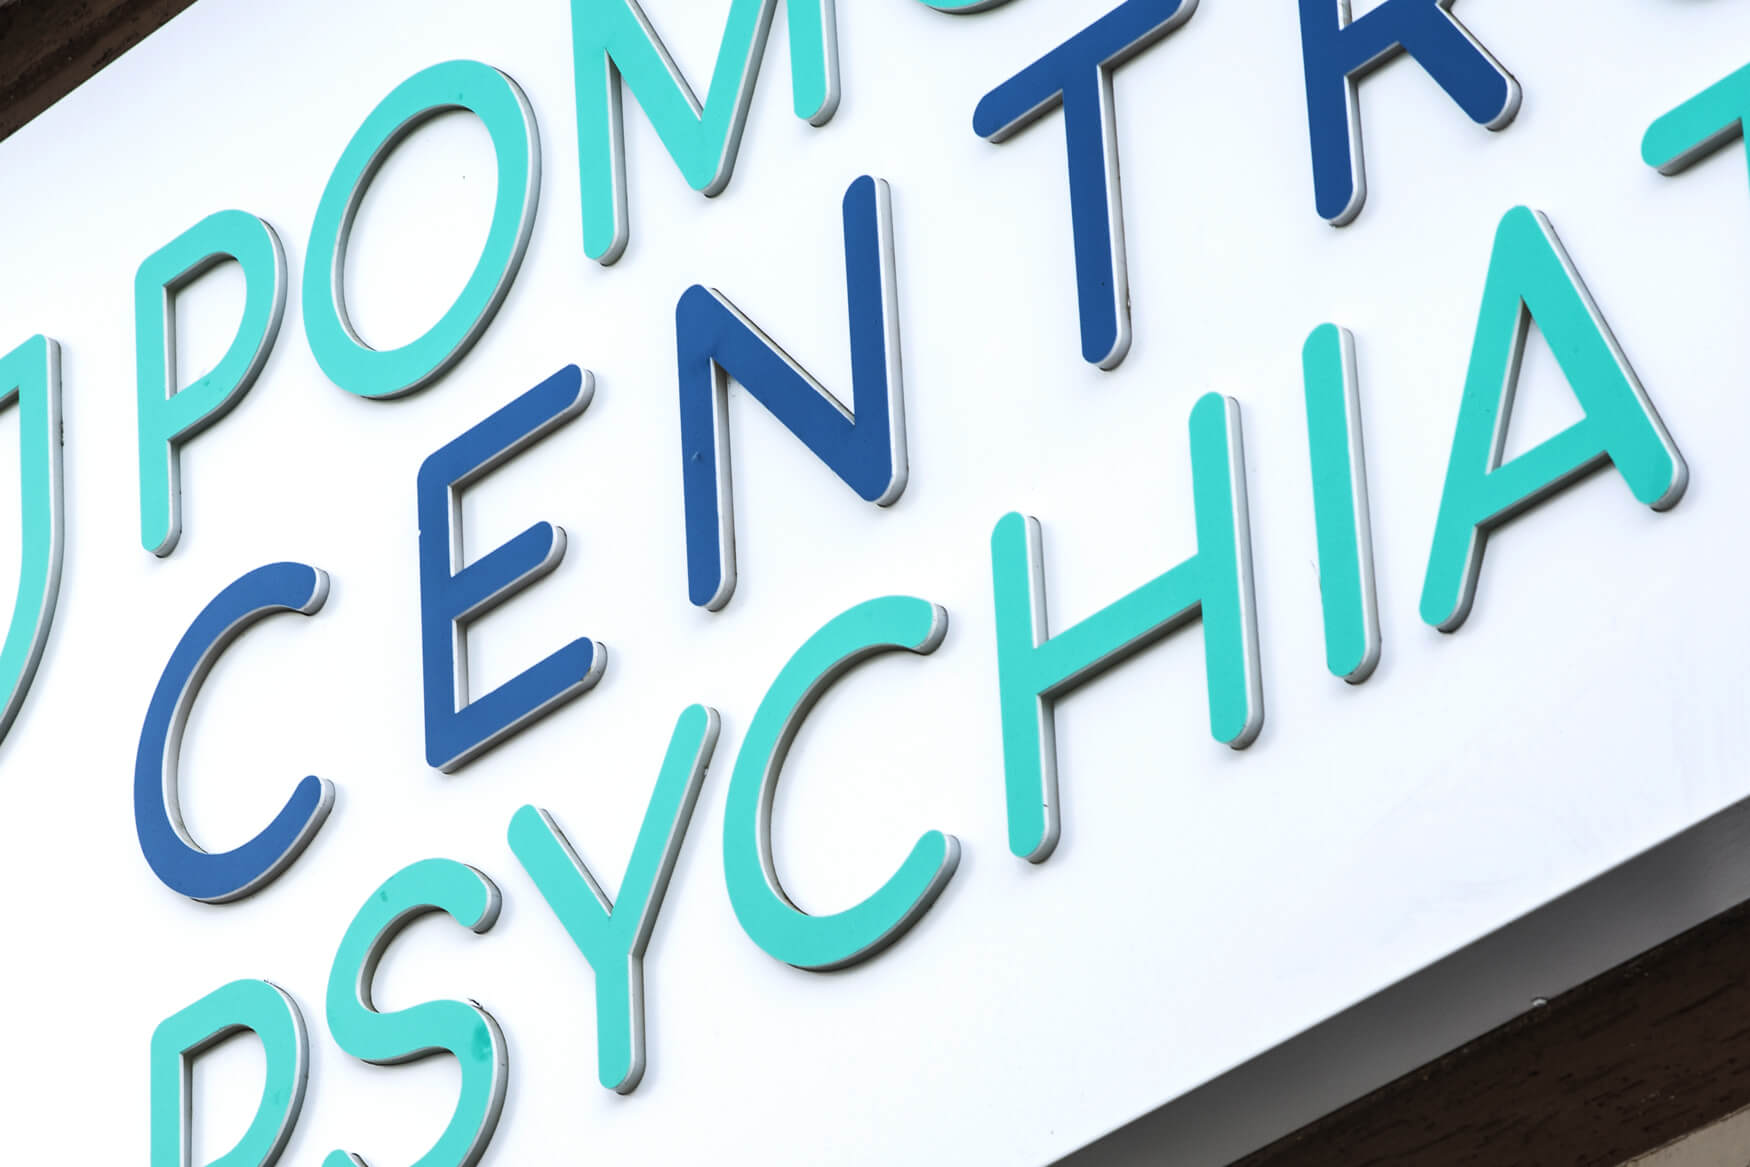 centro de psiquiatría de pomerania - Centro de Psiquiatría de Pomerania - cofre publicitario luminoso de dibond colocado sobre la entrada